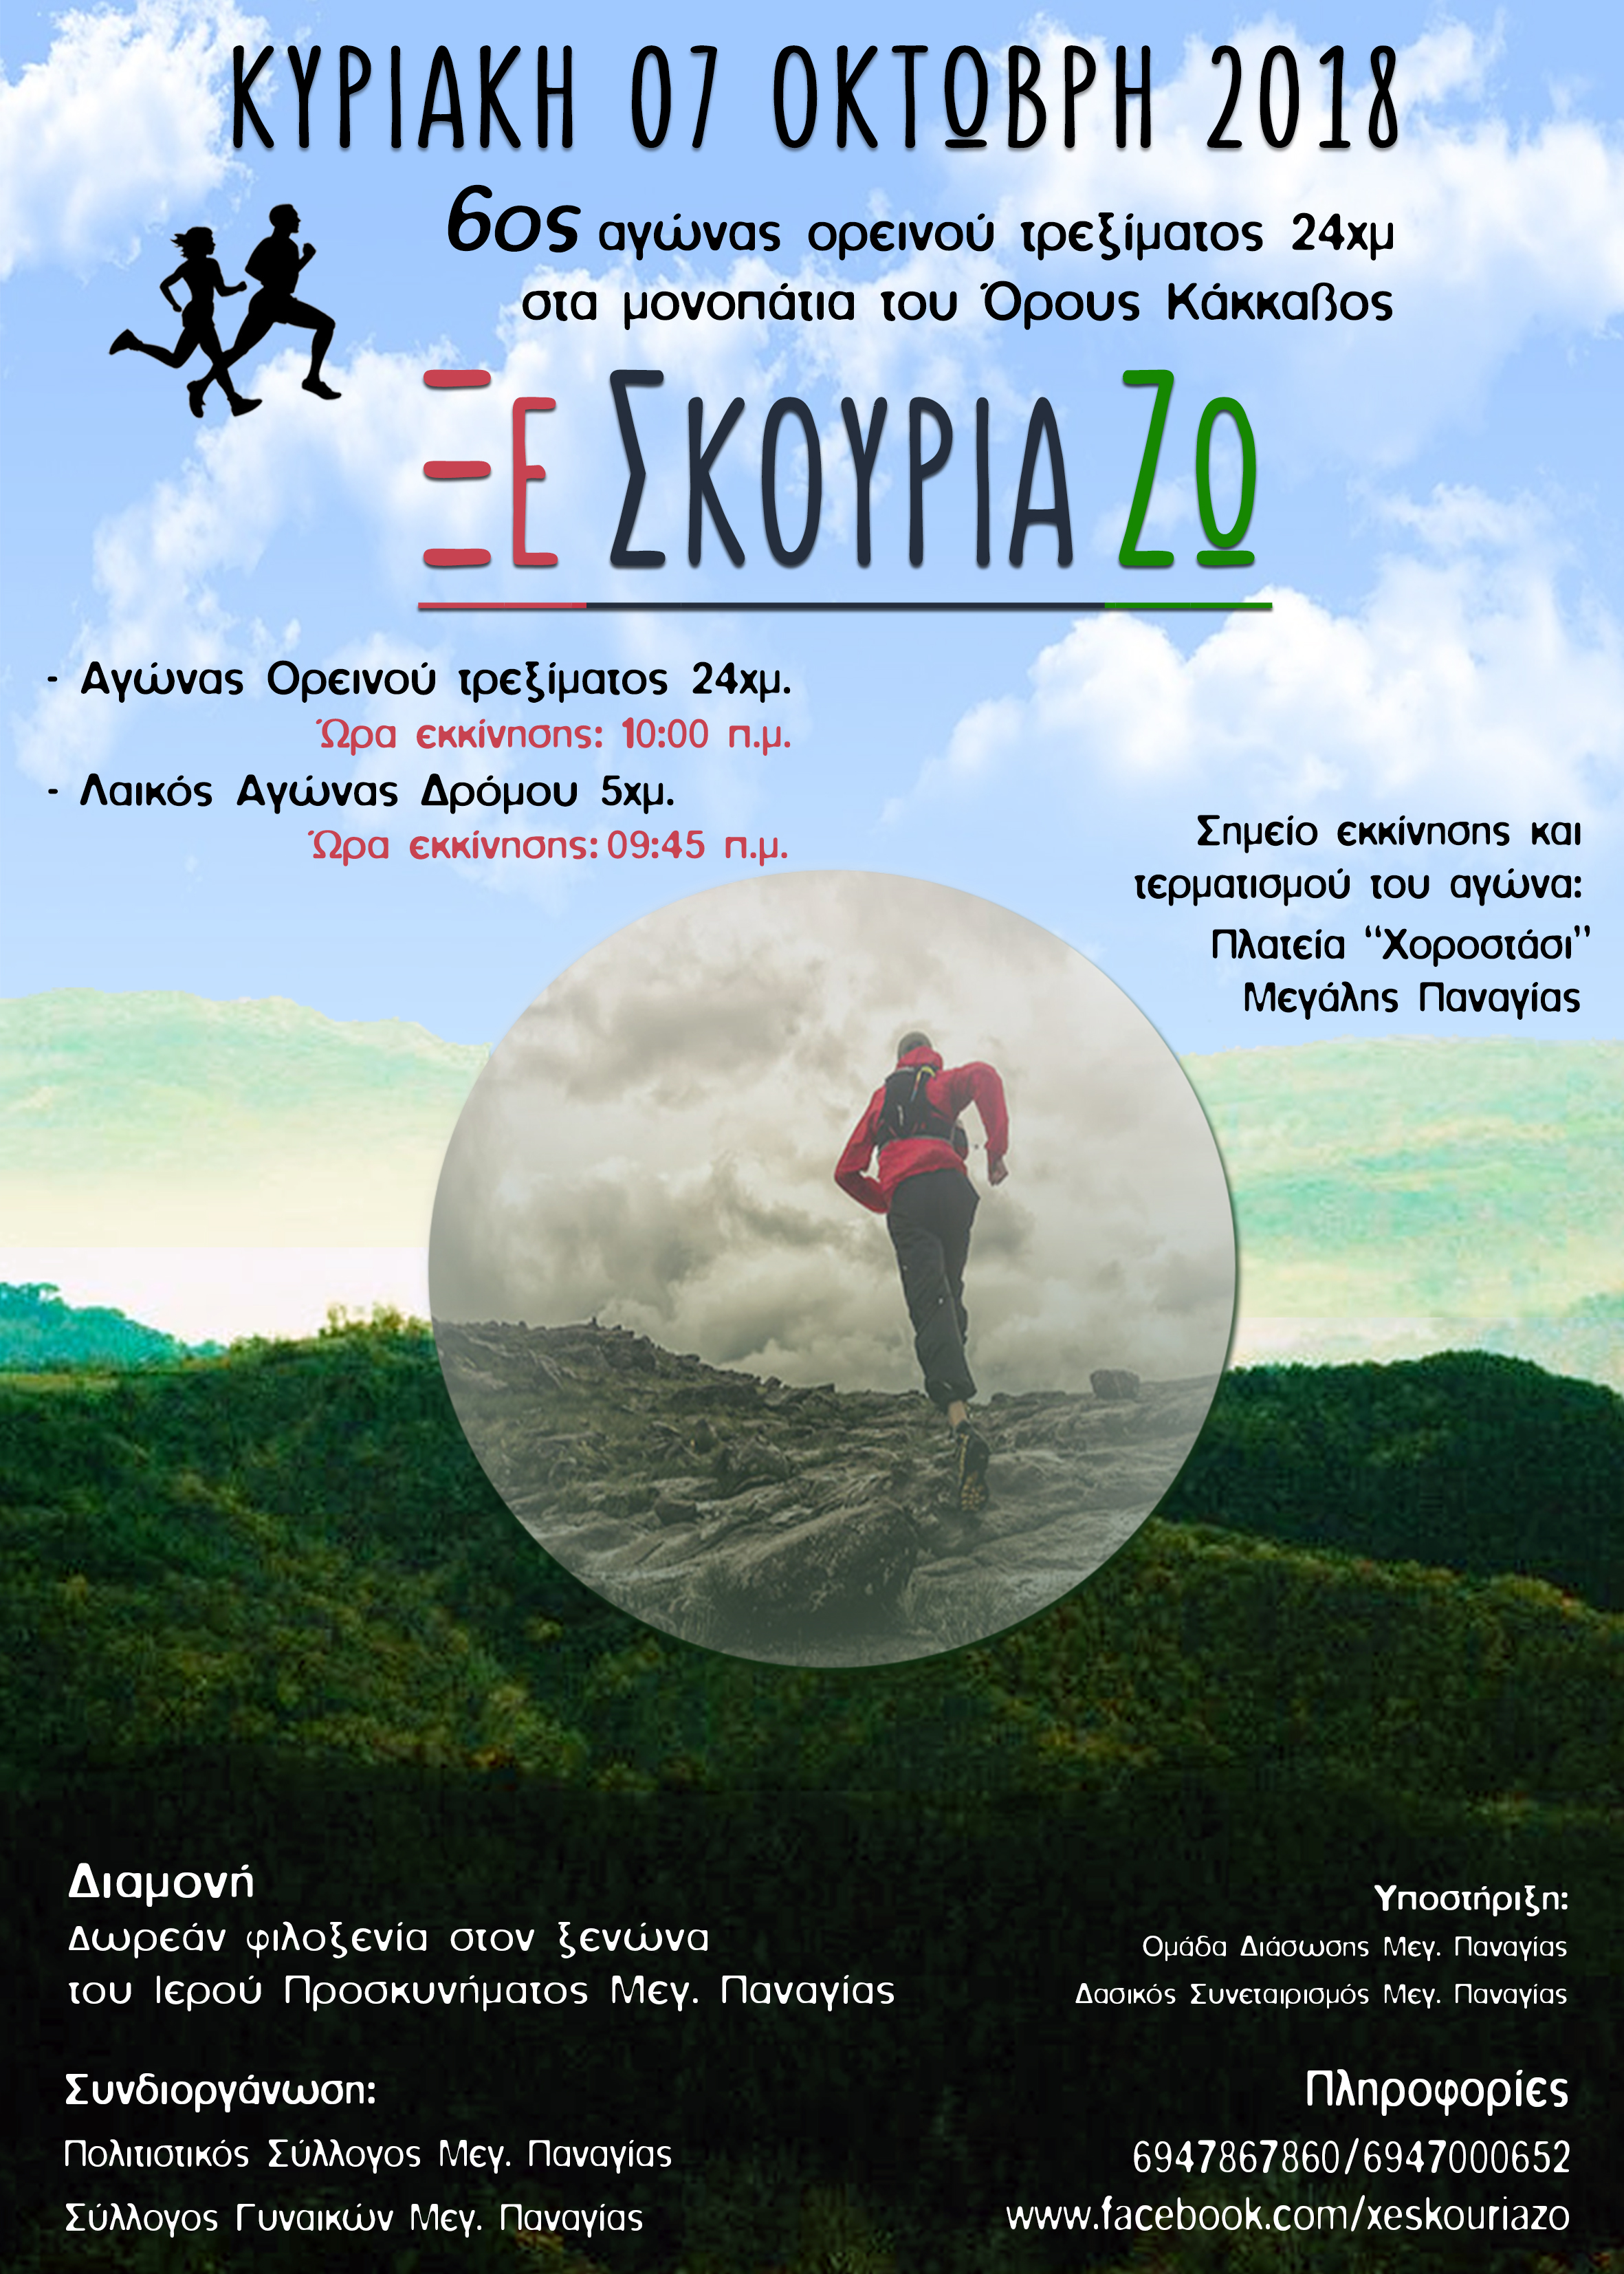 6ος αγώνας ορεινού τρεξίματος μήκους 24 χλμ. «Ξε Σκουριά Ζω» στο Όρος Κάκκαβος στη Μεγάλη Παναγία Χαλκιδικής